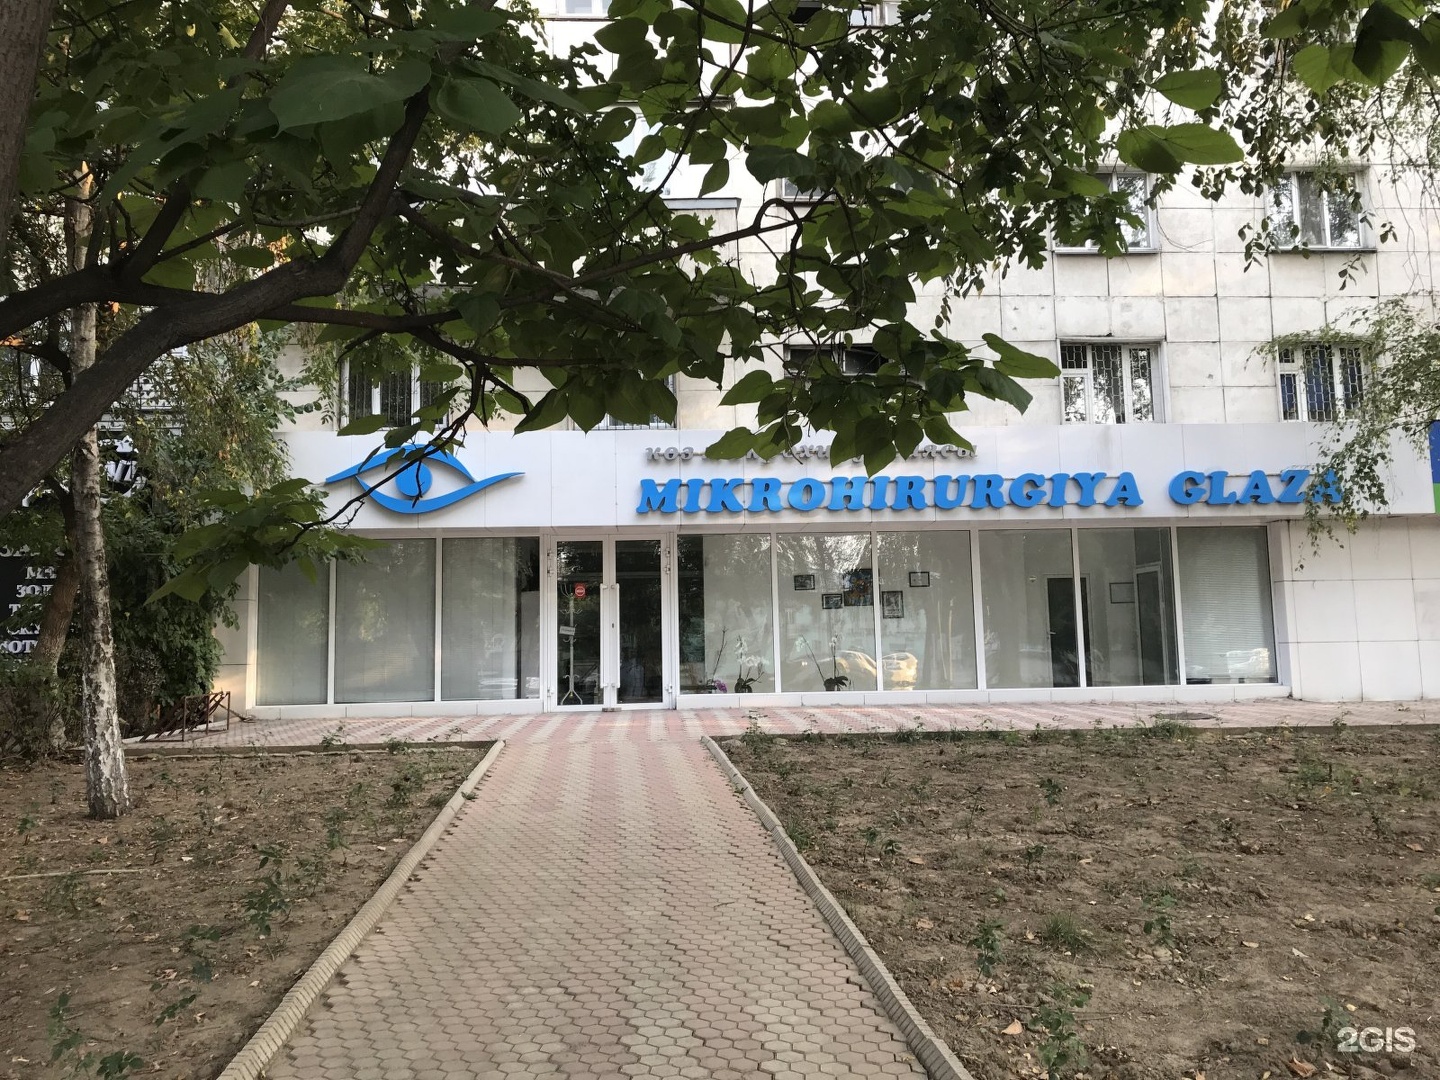 Приморский глаз центр. Международный глазной центр в Алматы.